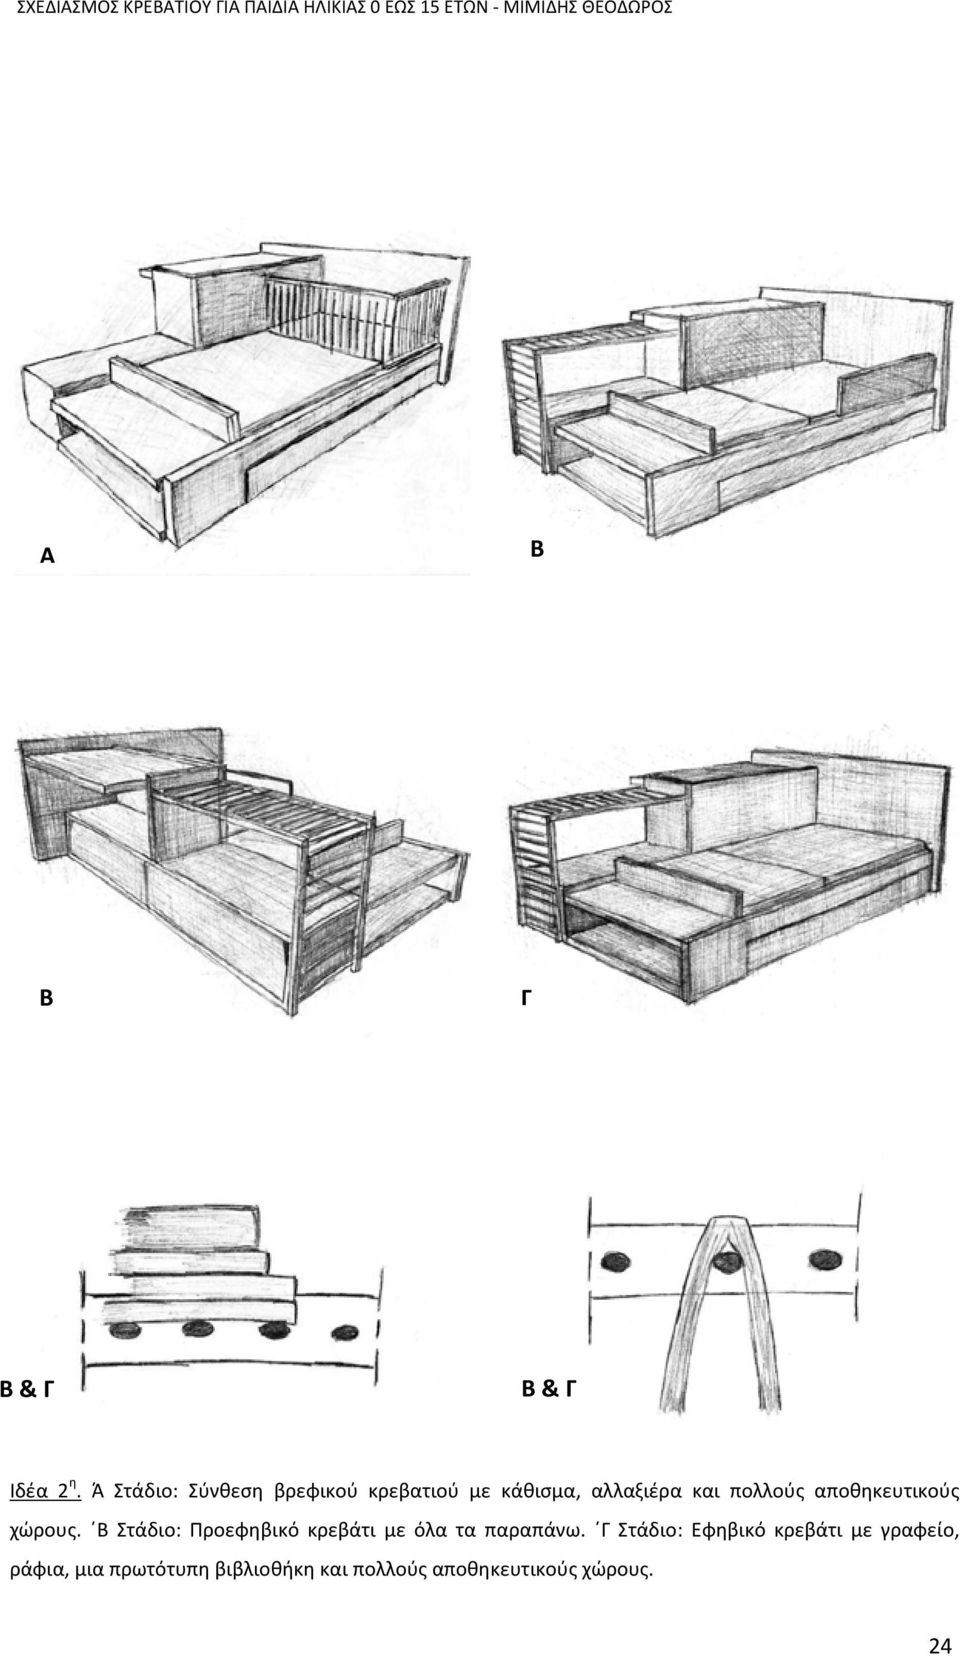 Ά Στάδιο: Σύνθεση βρεφικού κρεβατιού με κάθισμα, αλλαξιέρα και πολλούς αποθηκευτικούς